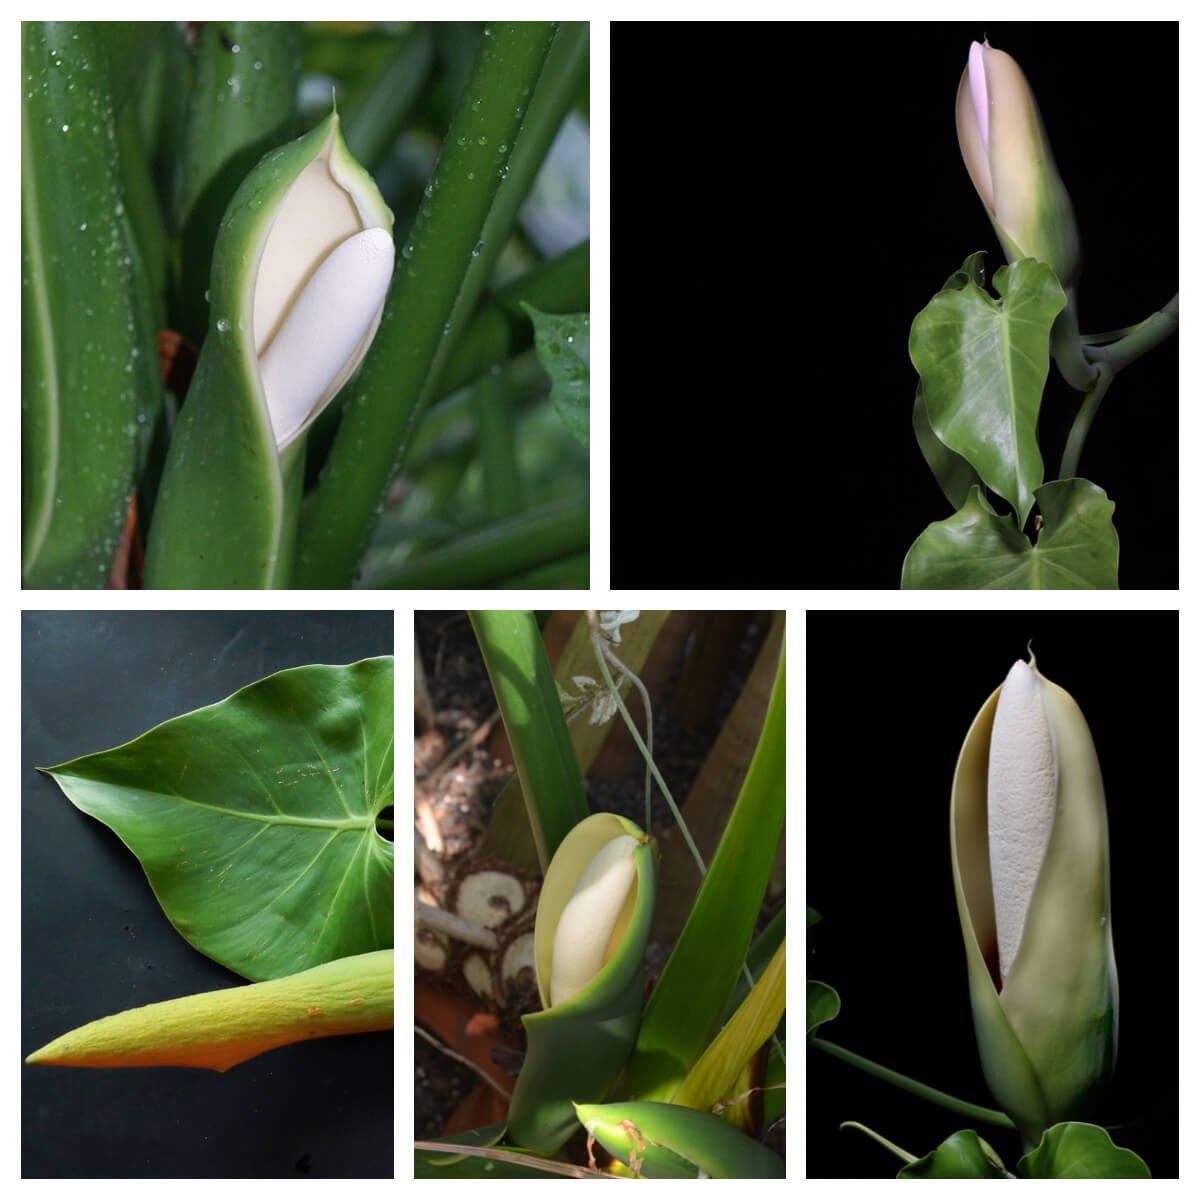 Philodendron hederaceum và Philodendron hederaceum 'Micans' có hoa tương đối giống nhau, có màu trắng